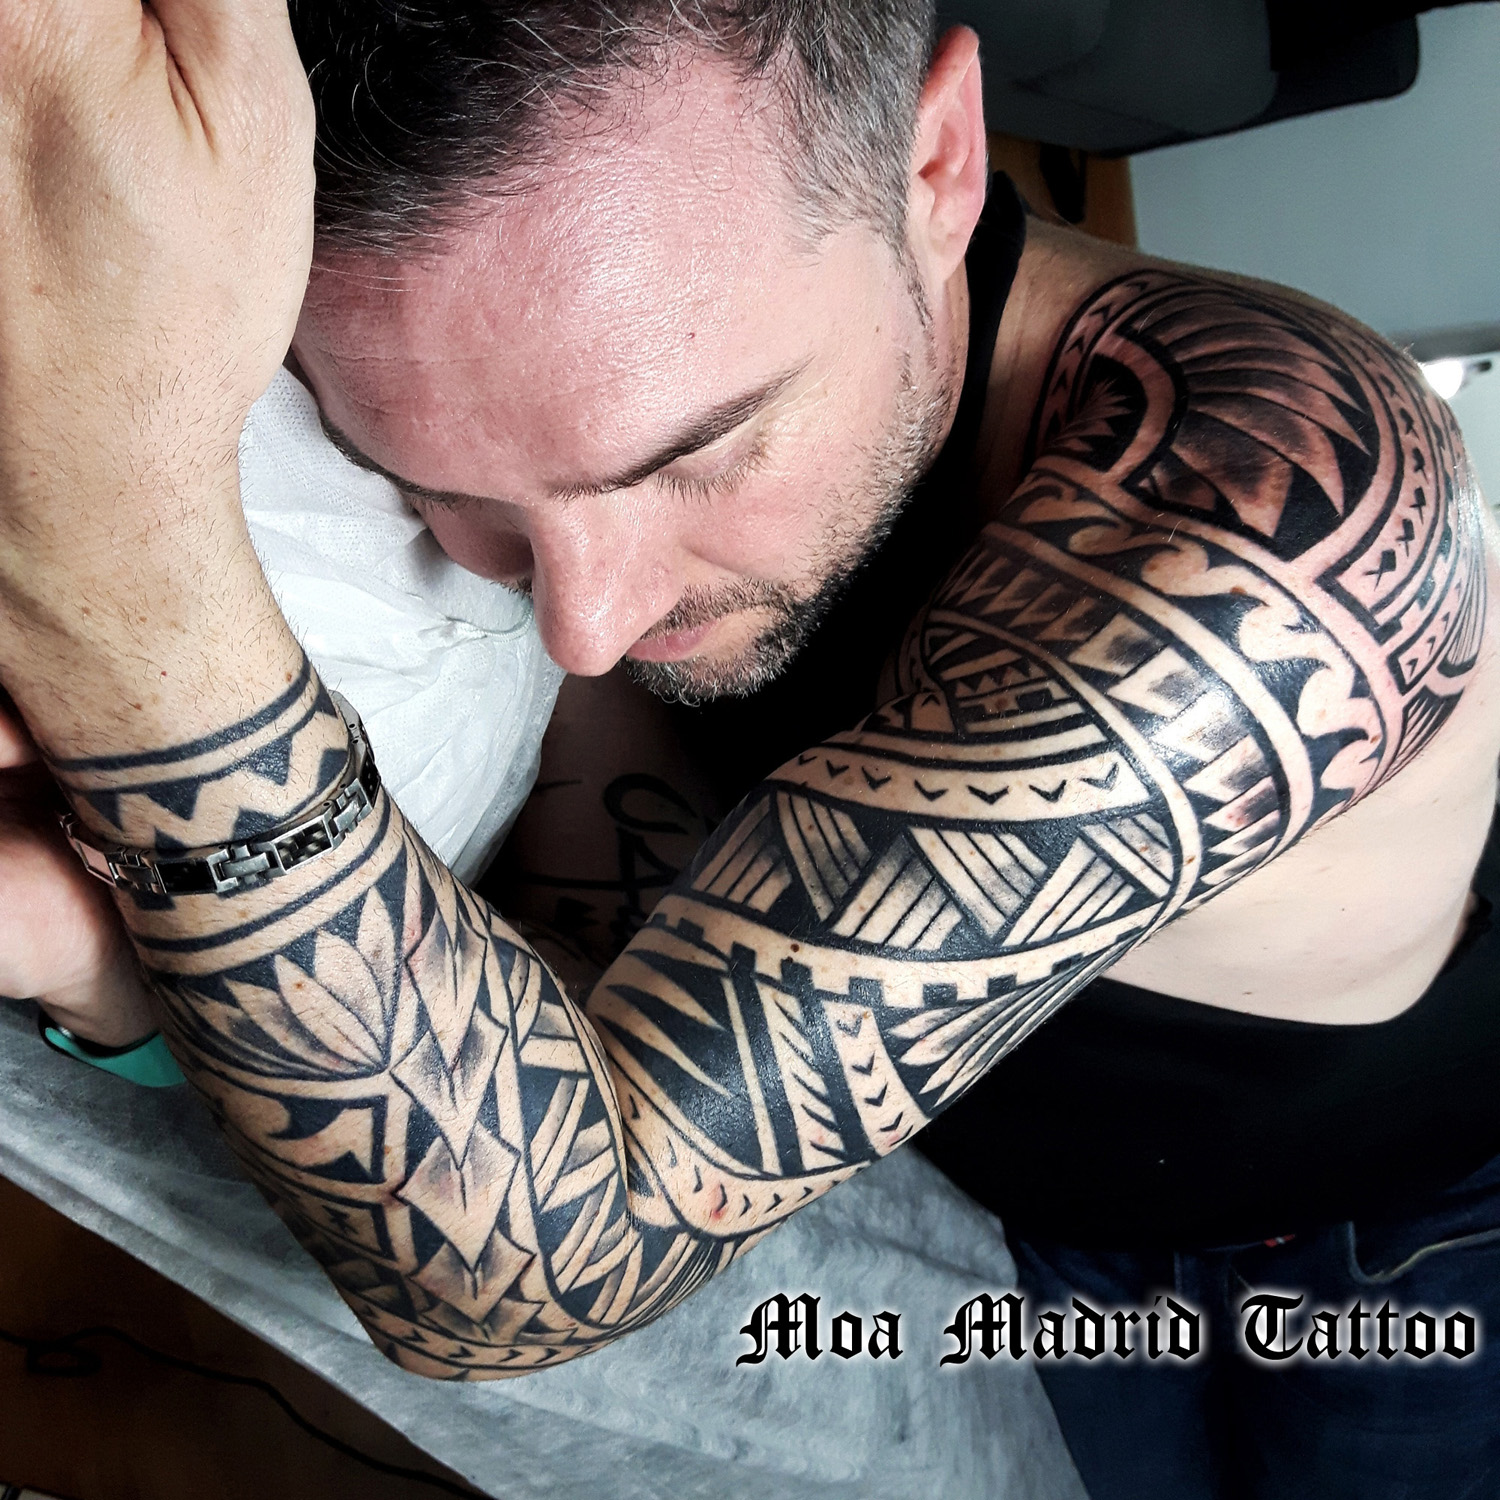 Brazo entero tatuado maorí en Madrid